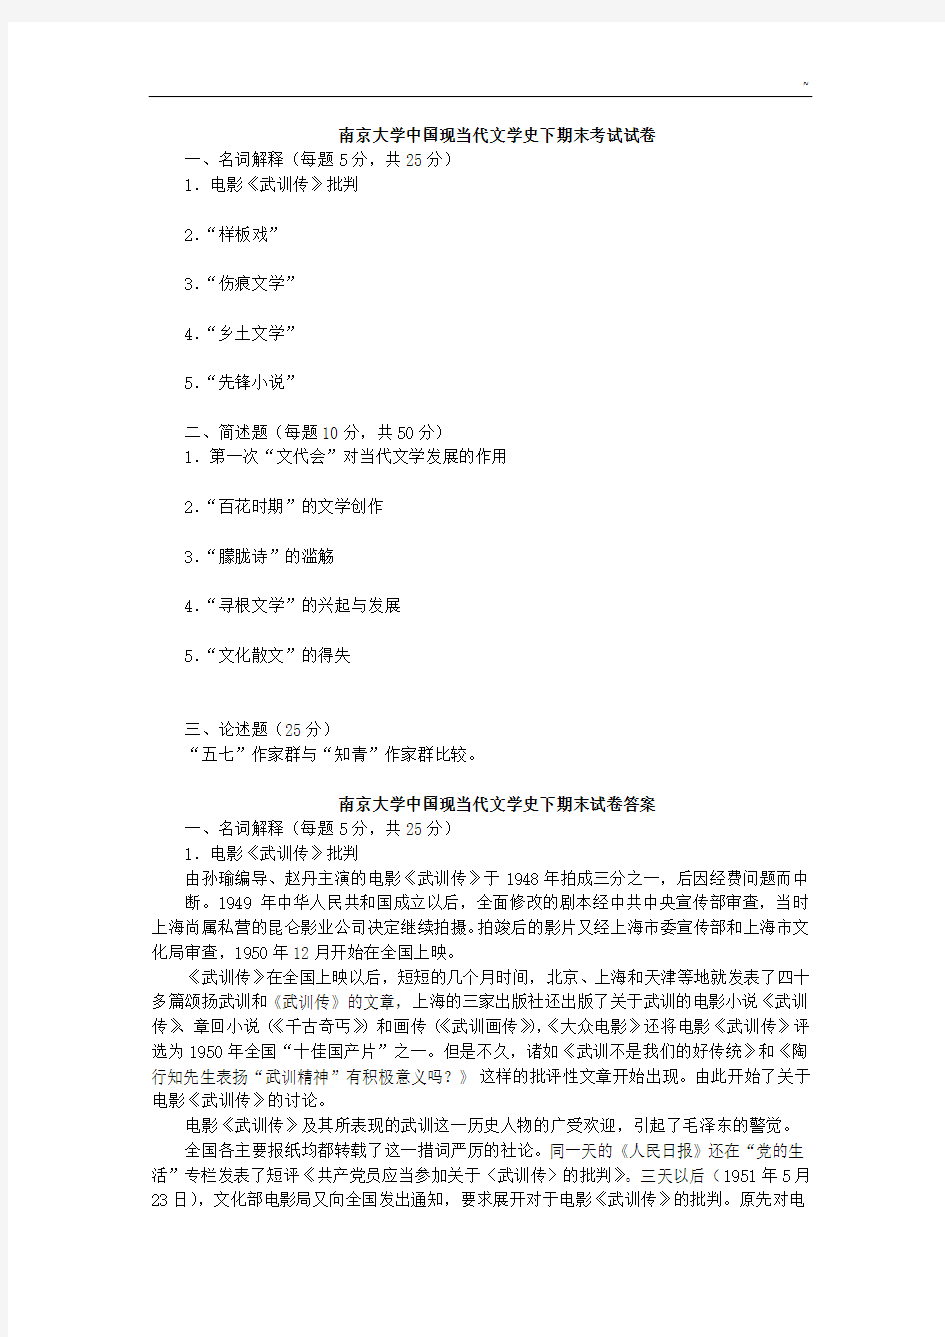 南京大学中国现当代文学史(下)期末考试卷(附答案解析)